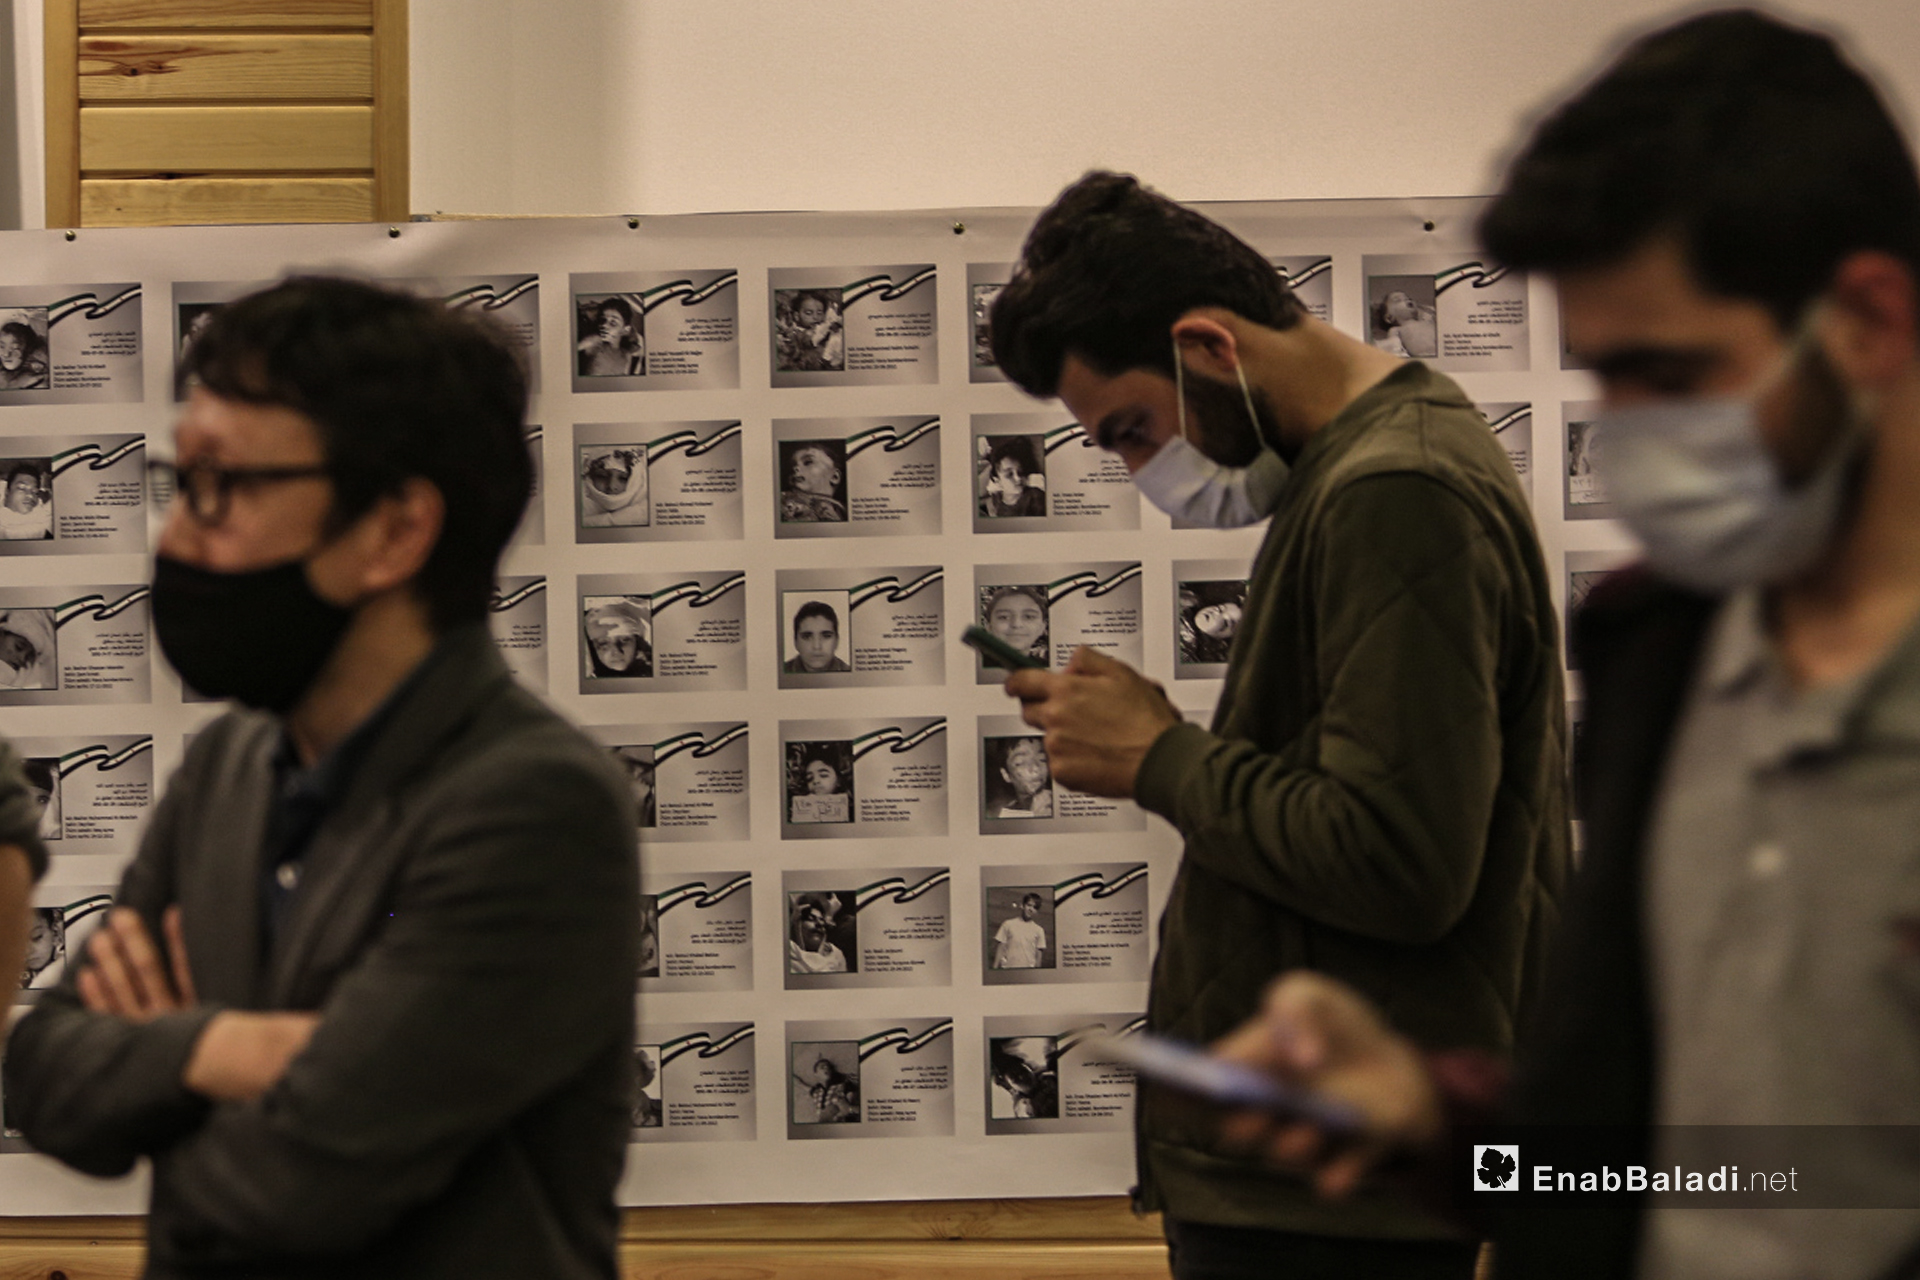 ناشطين في معرض "سُكّان الذاكرة"
الذي يوثق بالصور والأسماء والتواريخ 4600 طفل سوري على لوحة طولها 70 متر في إسطنبول - 13 تشرين الأول (عنب بلدي/ عبد المعين حمص)
